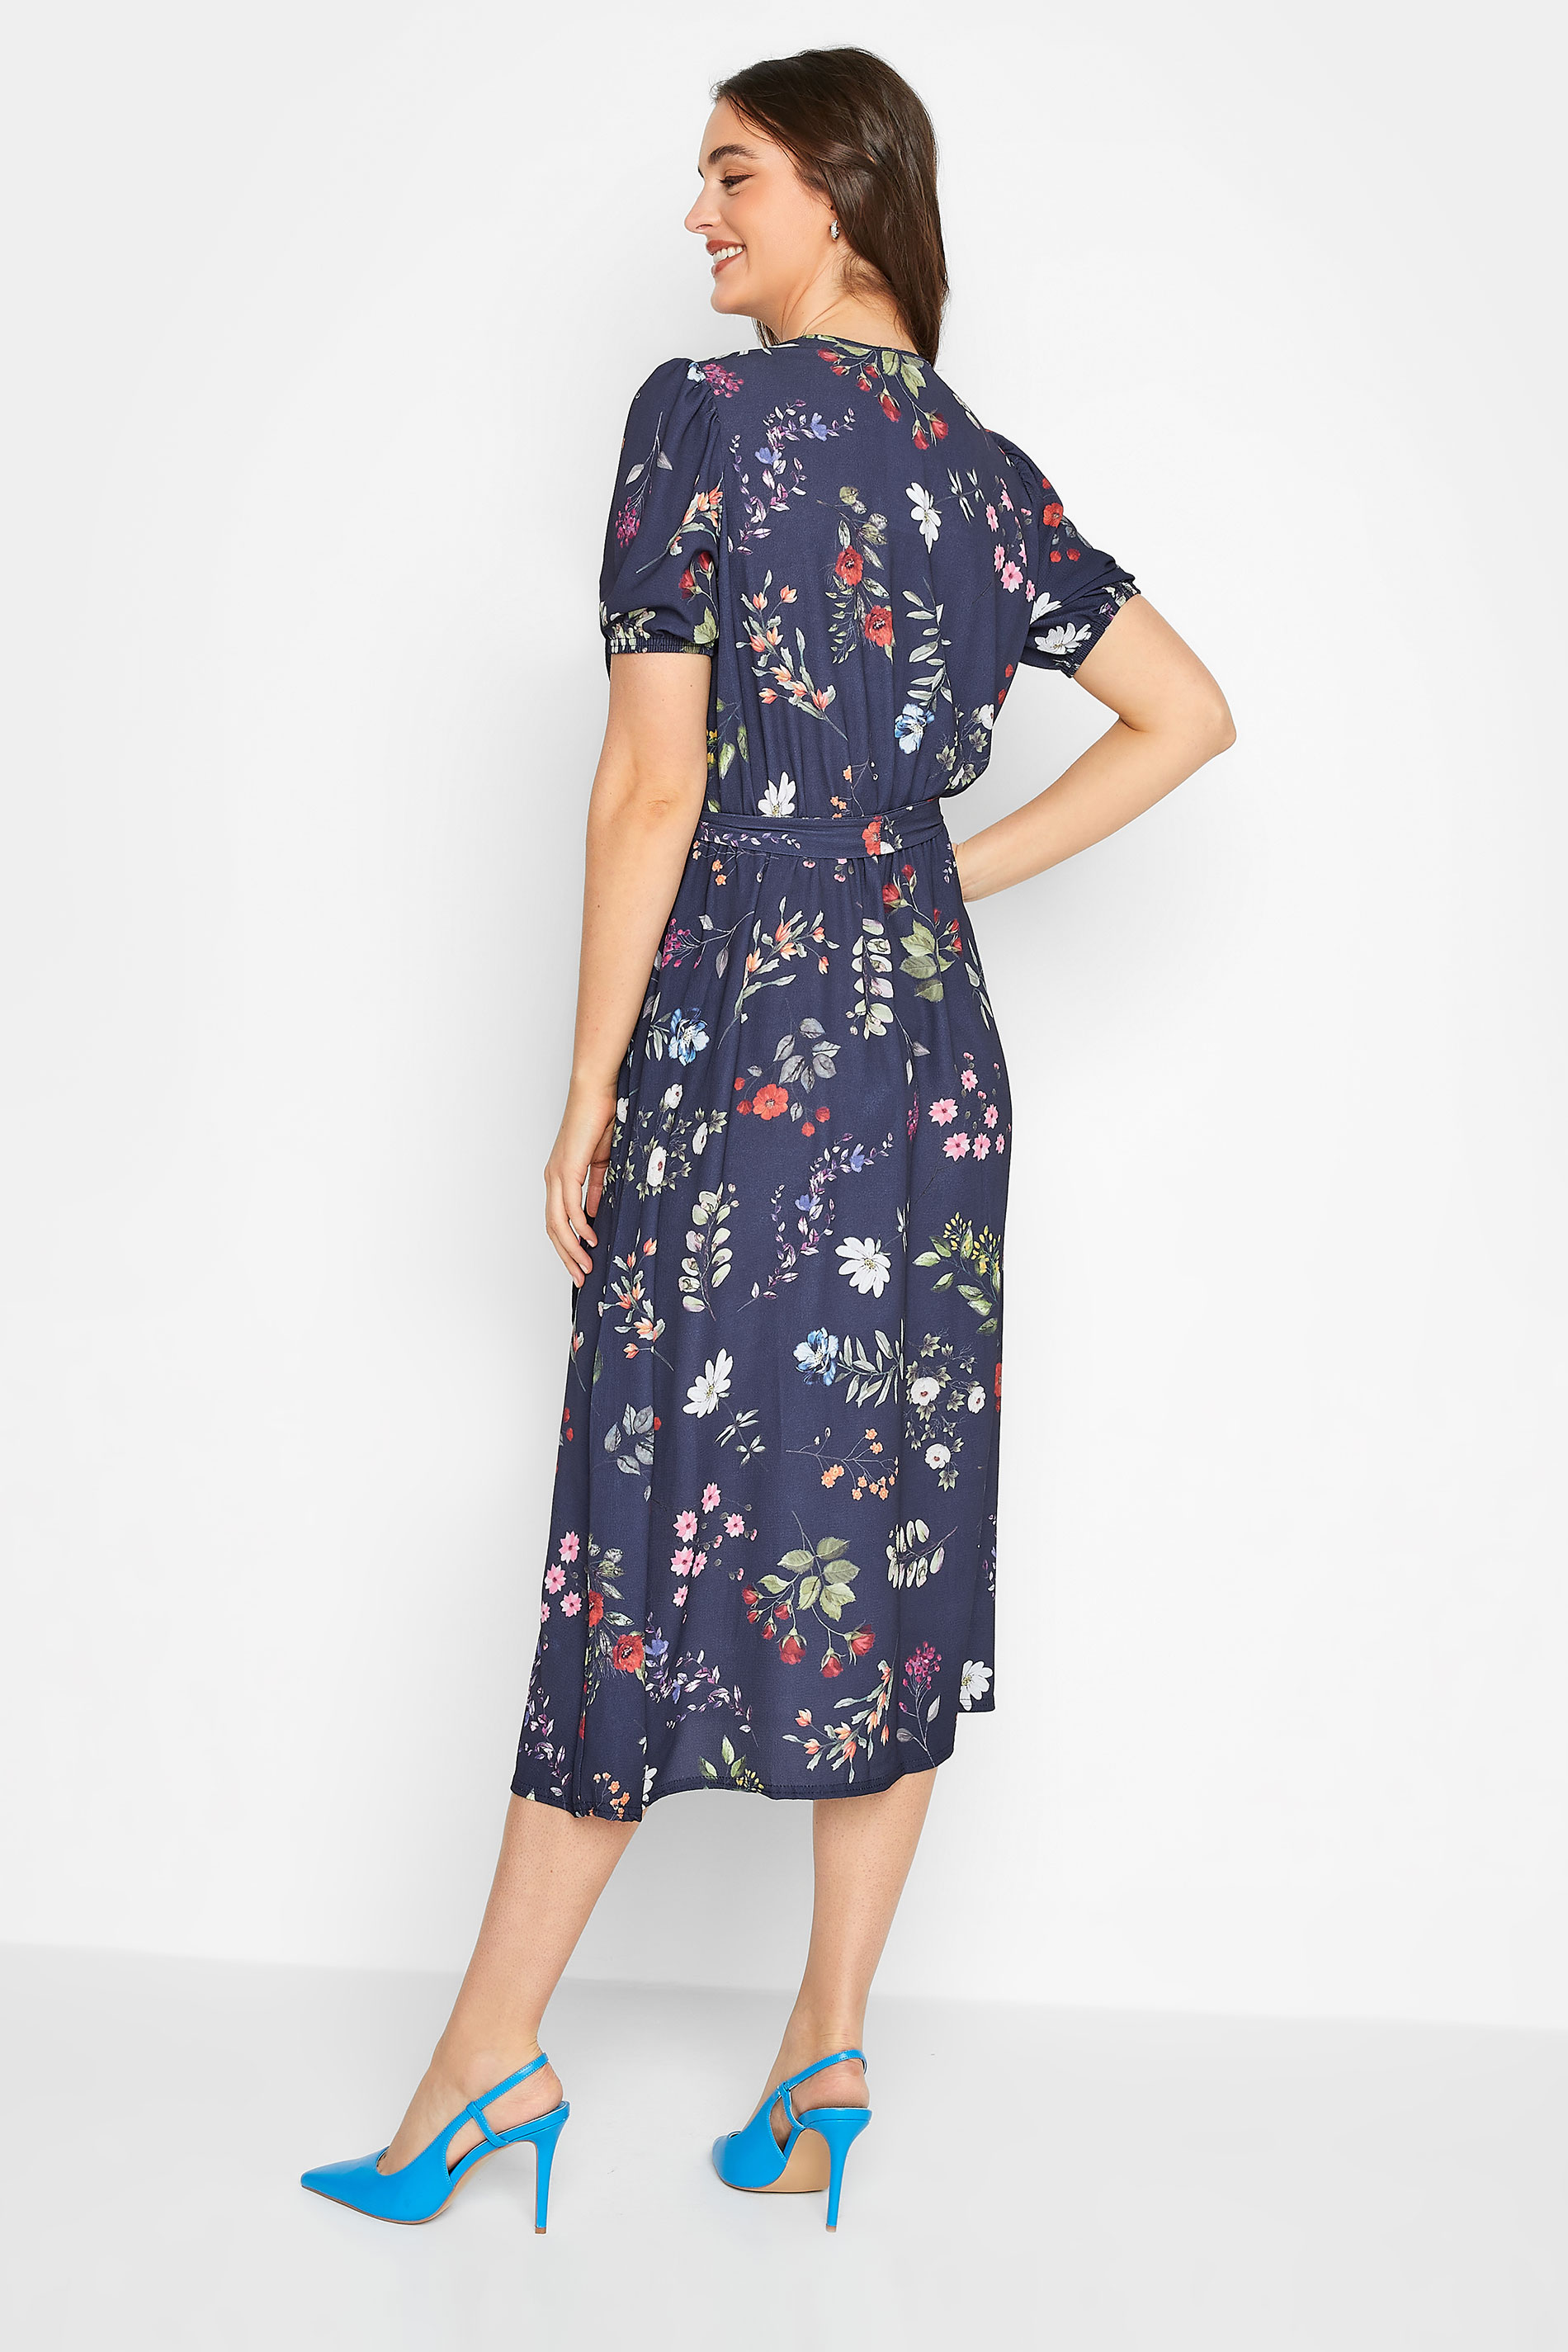 LTS Tall Women's Navy Blue Floral Wrap Dress | Long Tall Sally 3